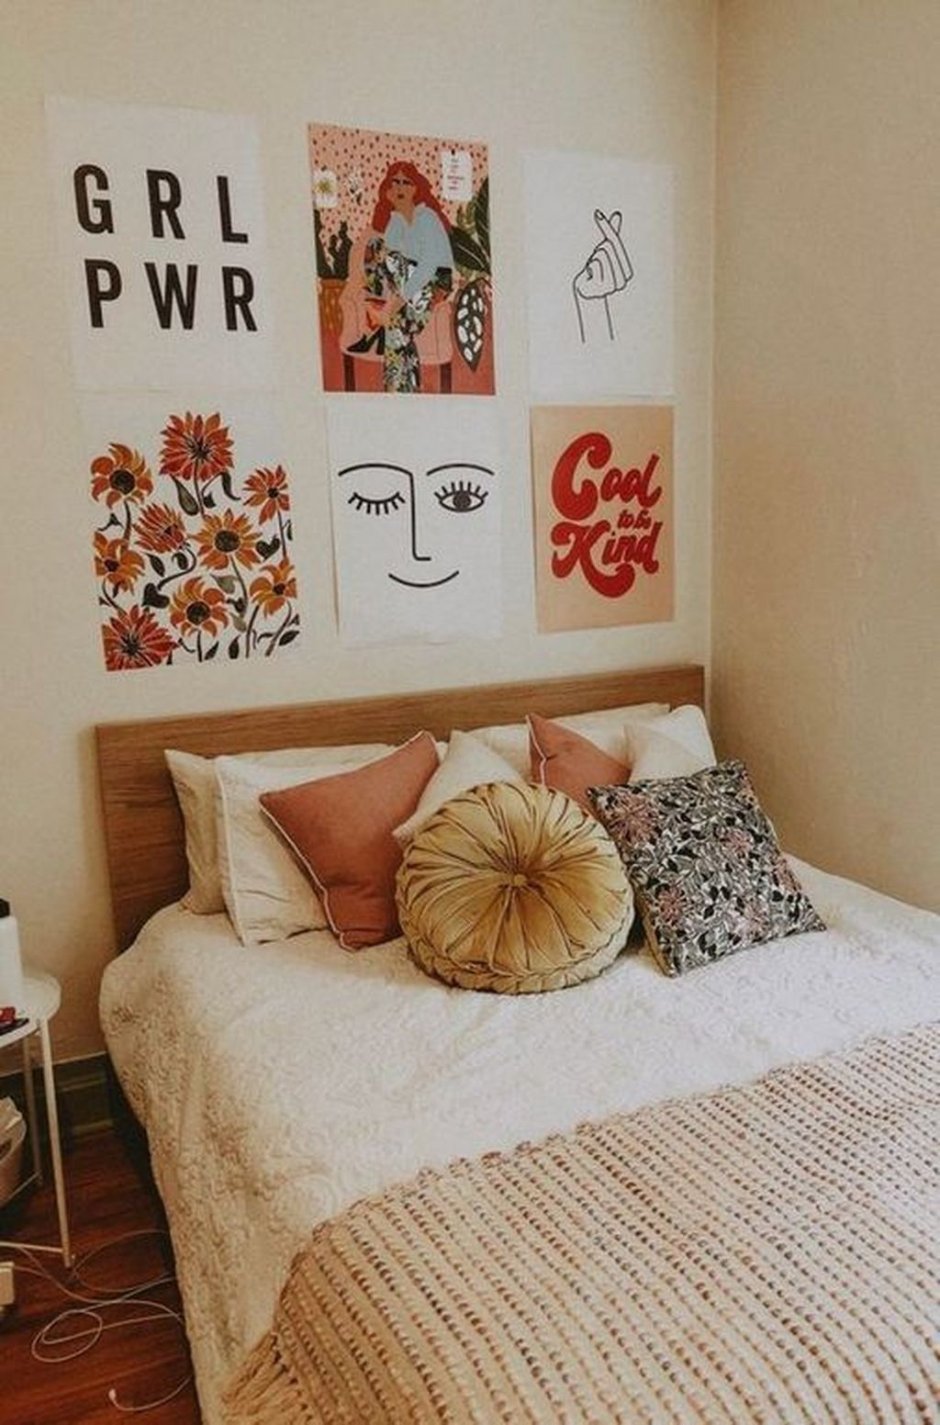 Уютная комната с постерами